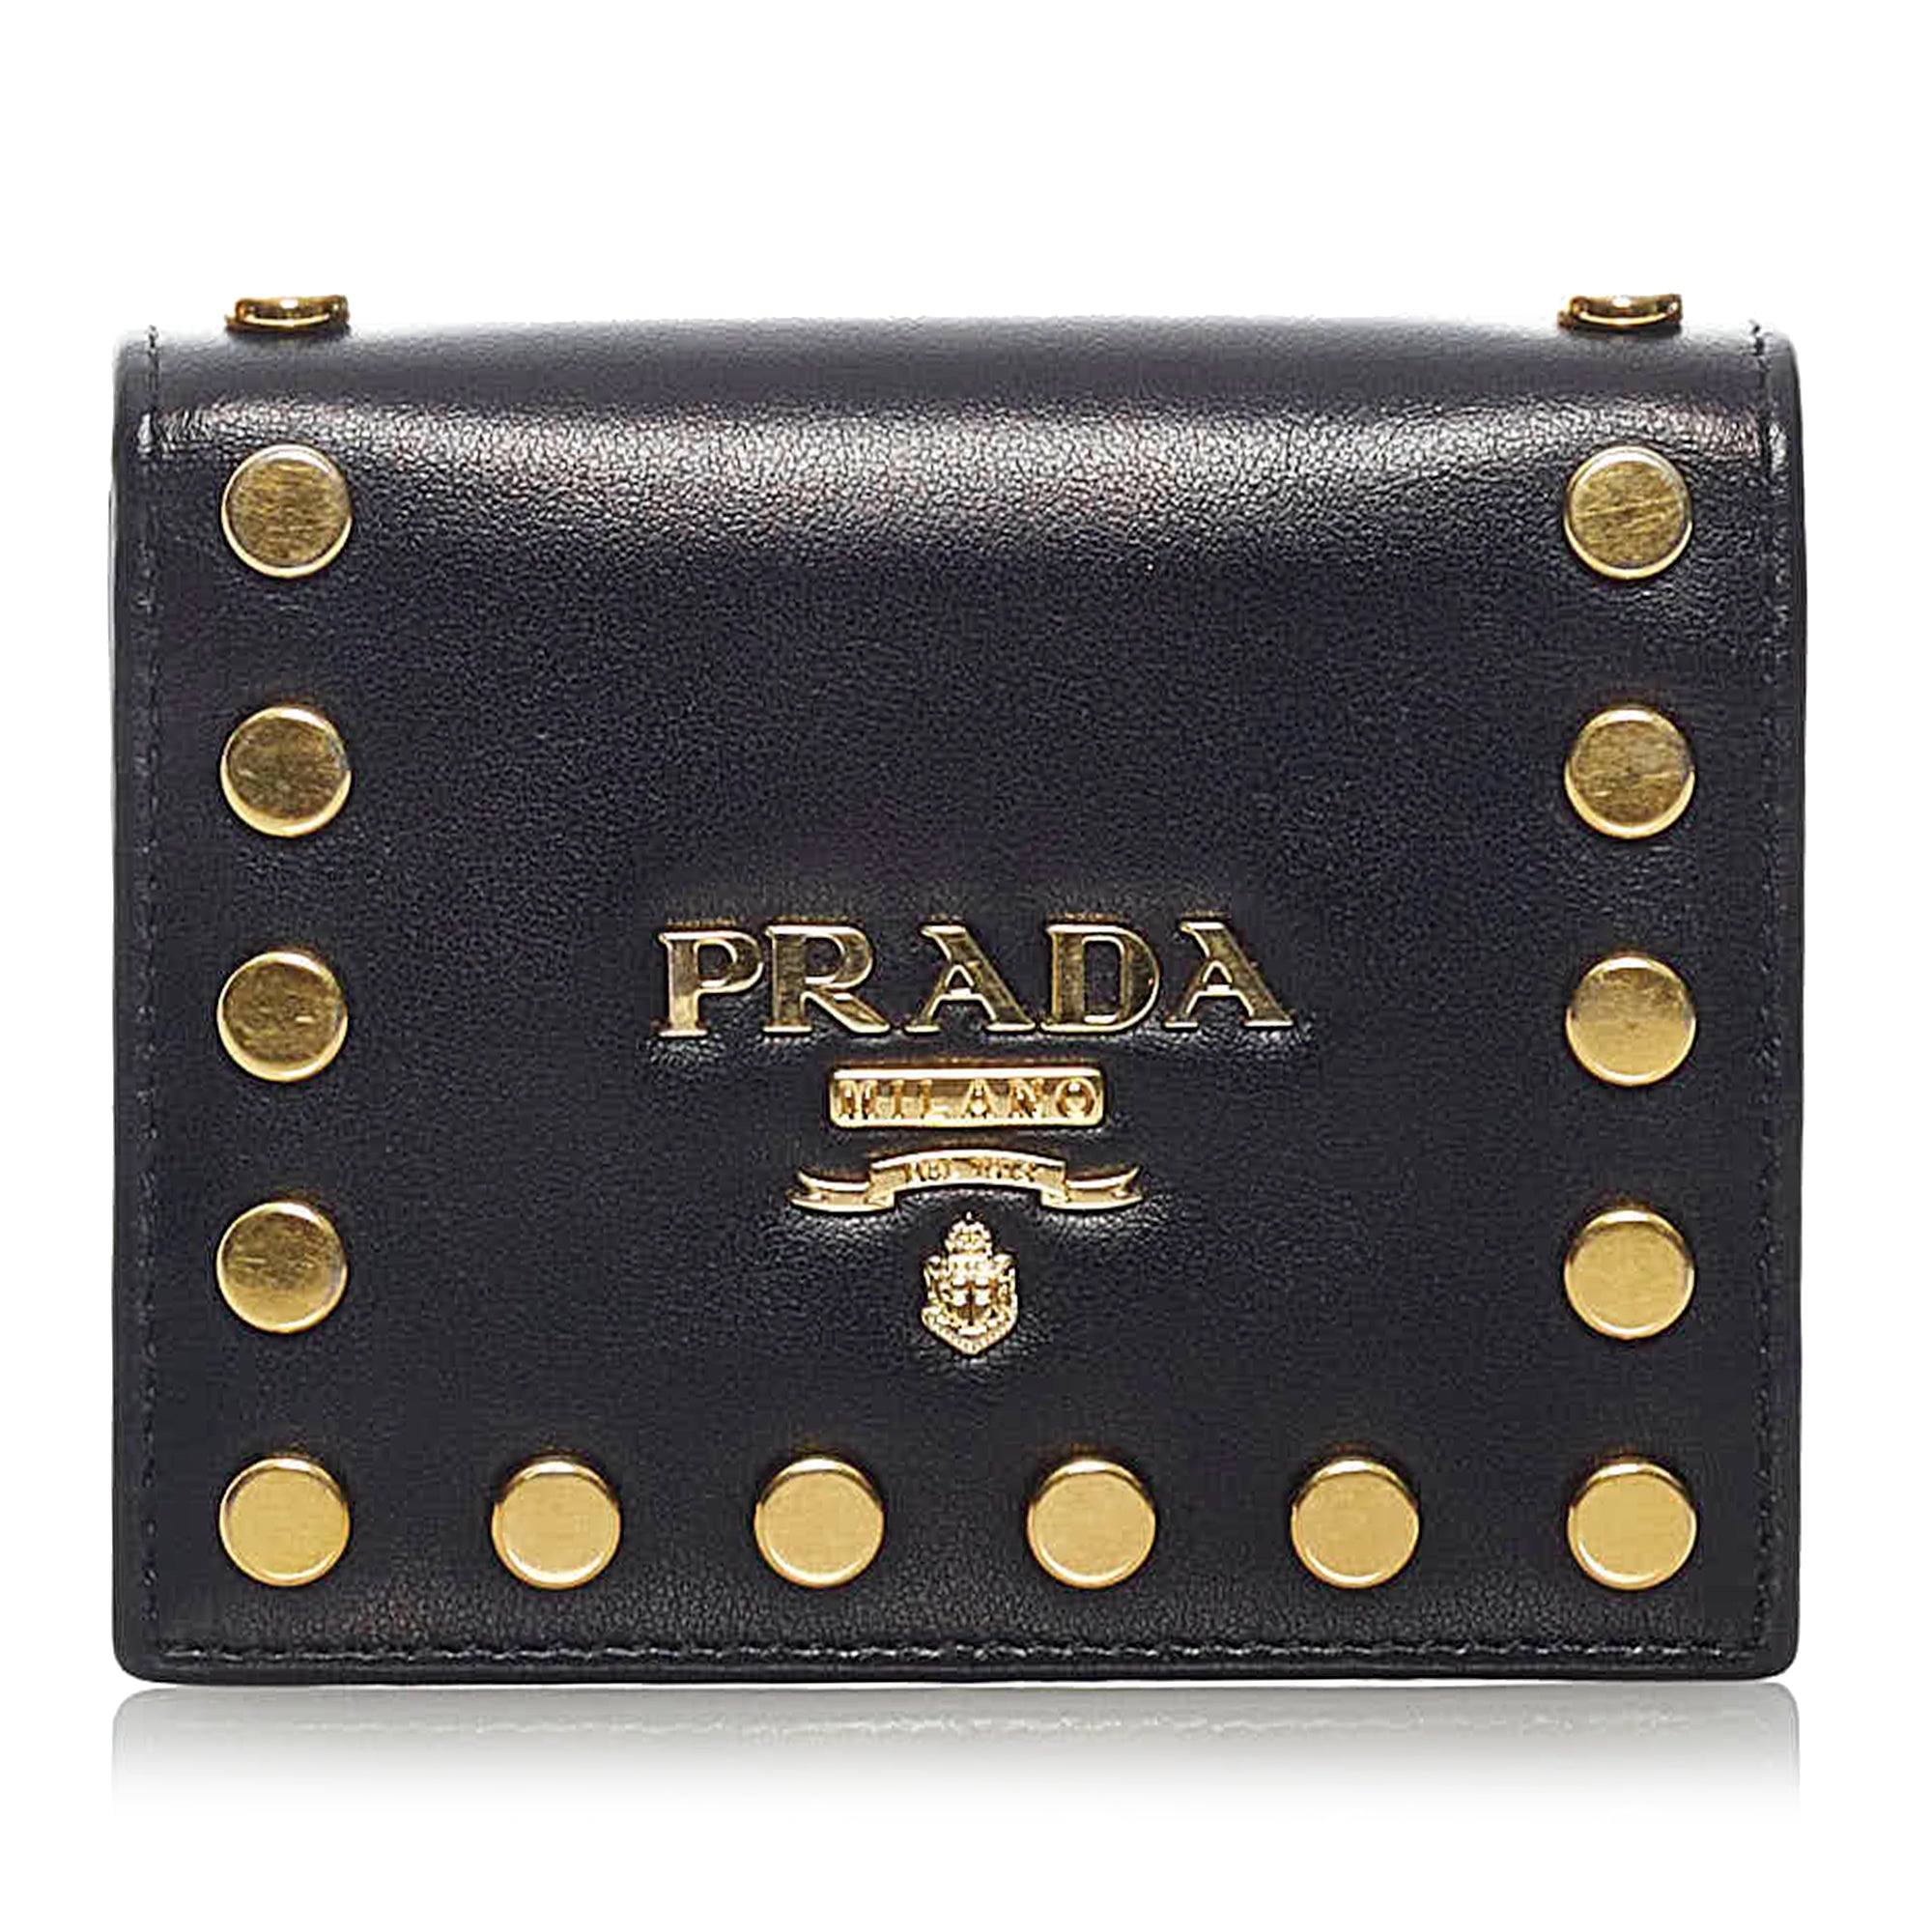 prada pre owned logo plaque cosmetic bag item